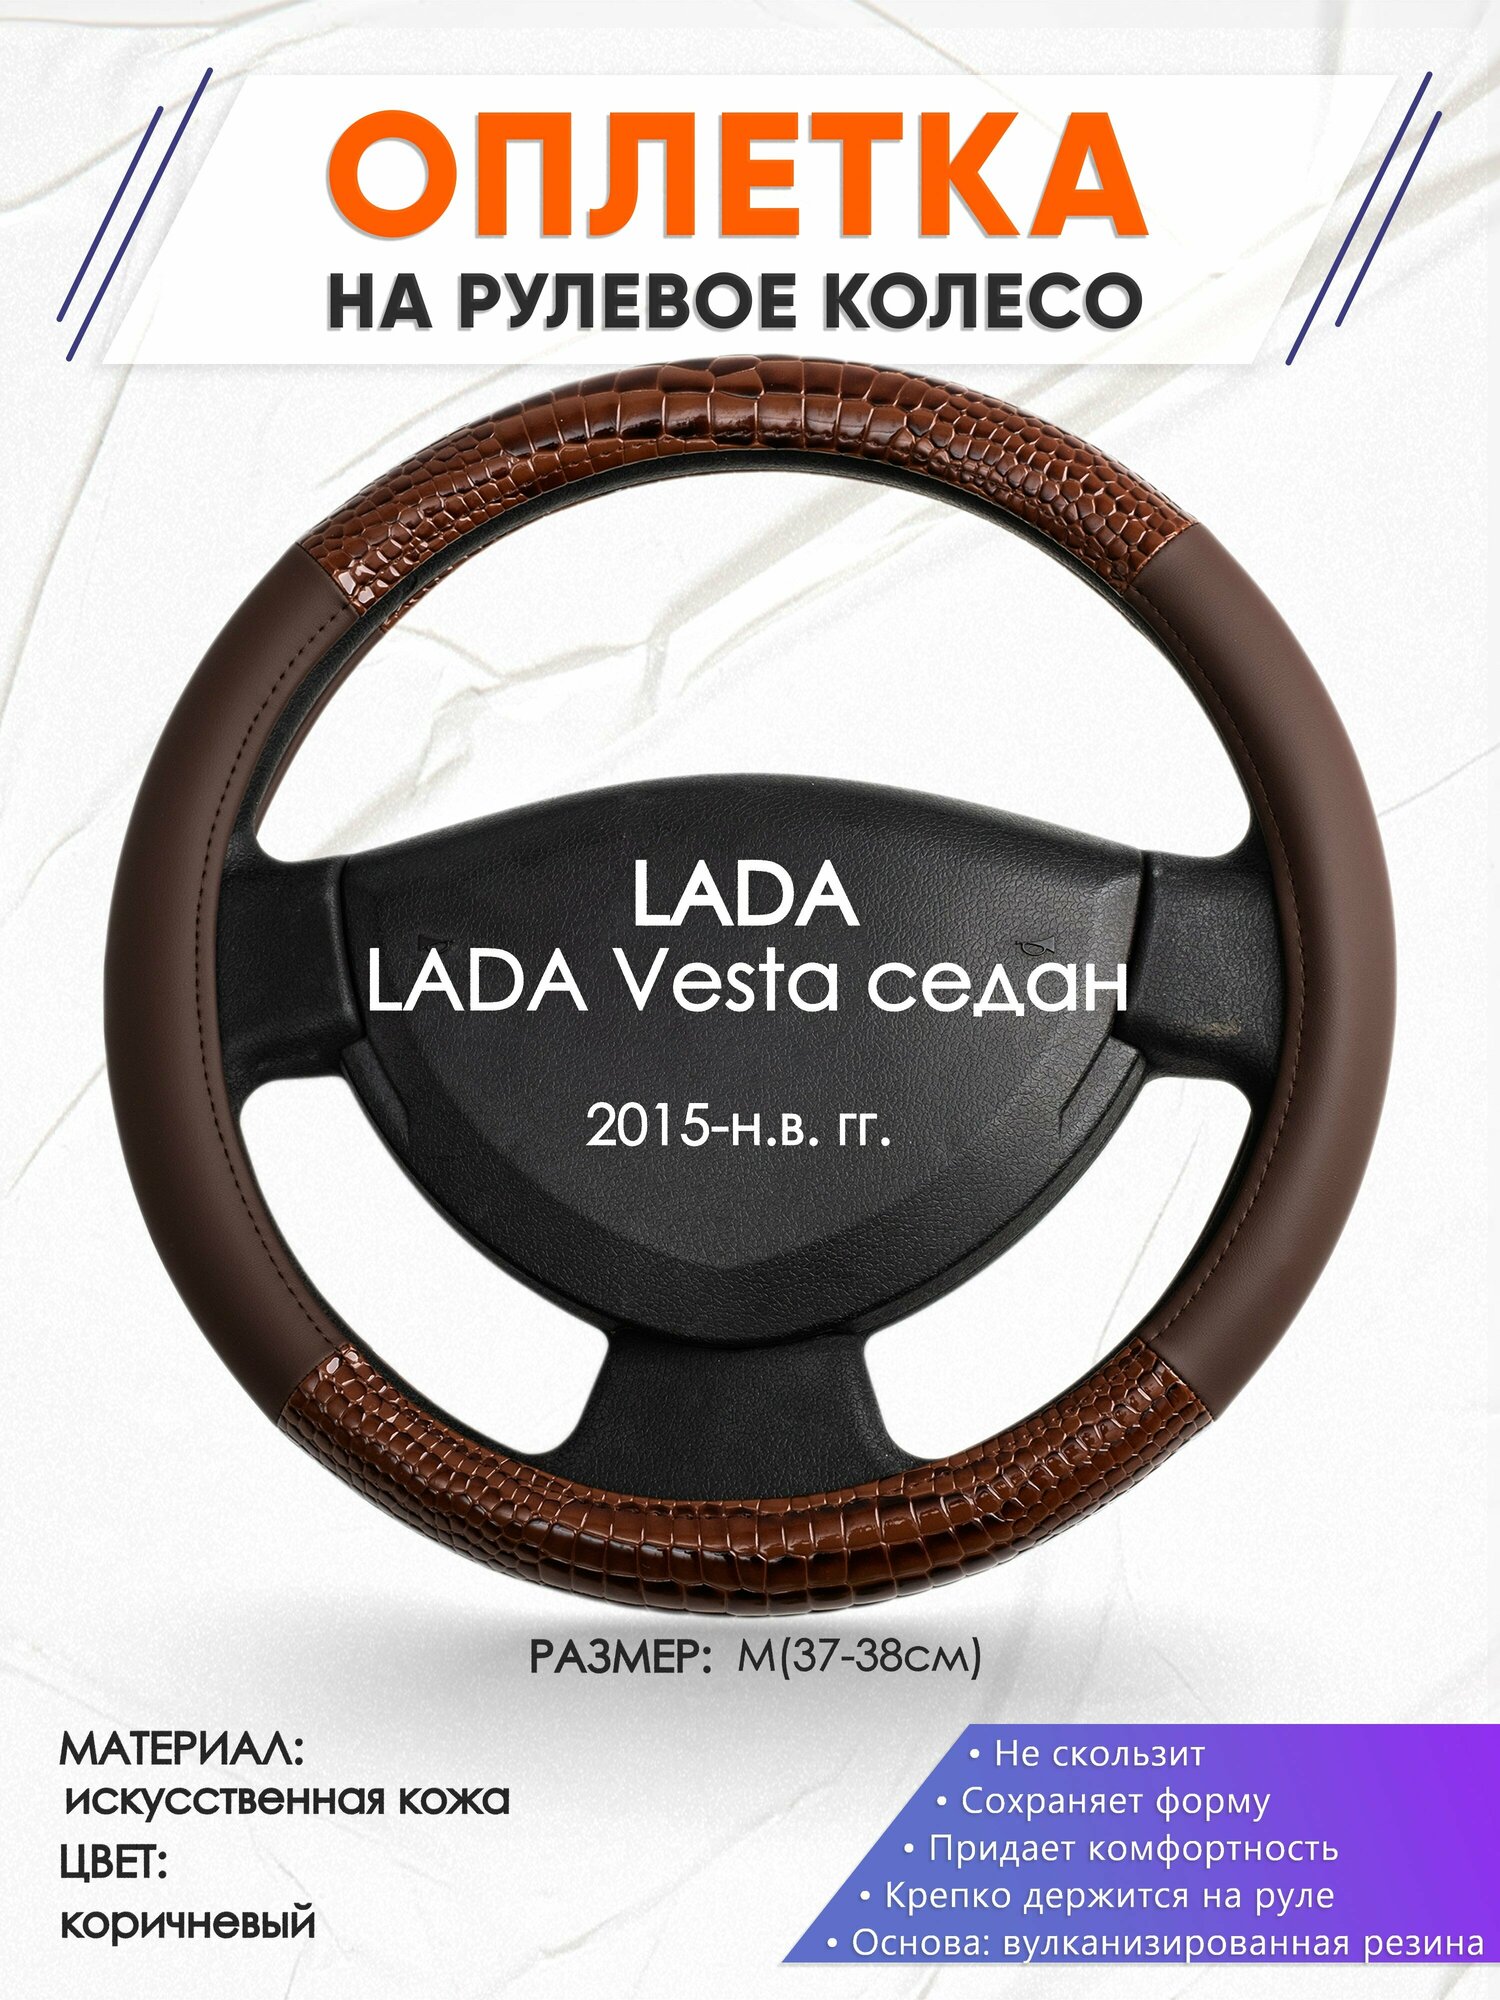 Оплетка наруль для LADA Vesta седан(Лада Веста) 2015-н. в. годов выпуска, размер M(37-38см), Искусственная кожа 85